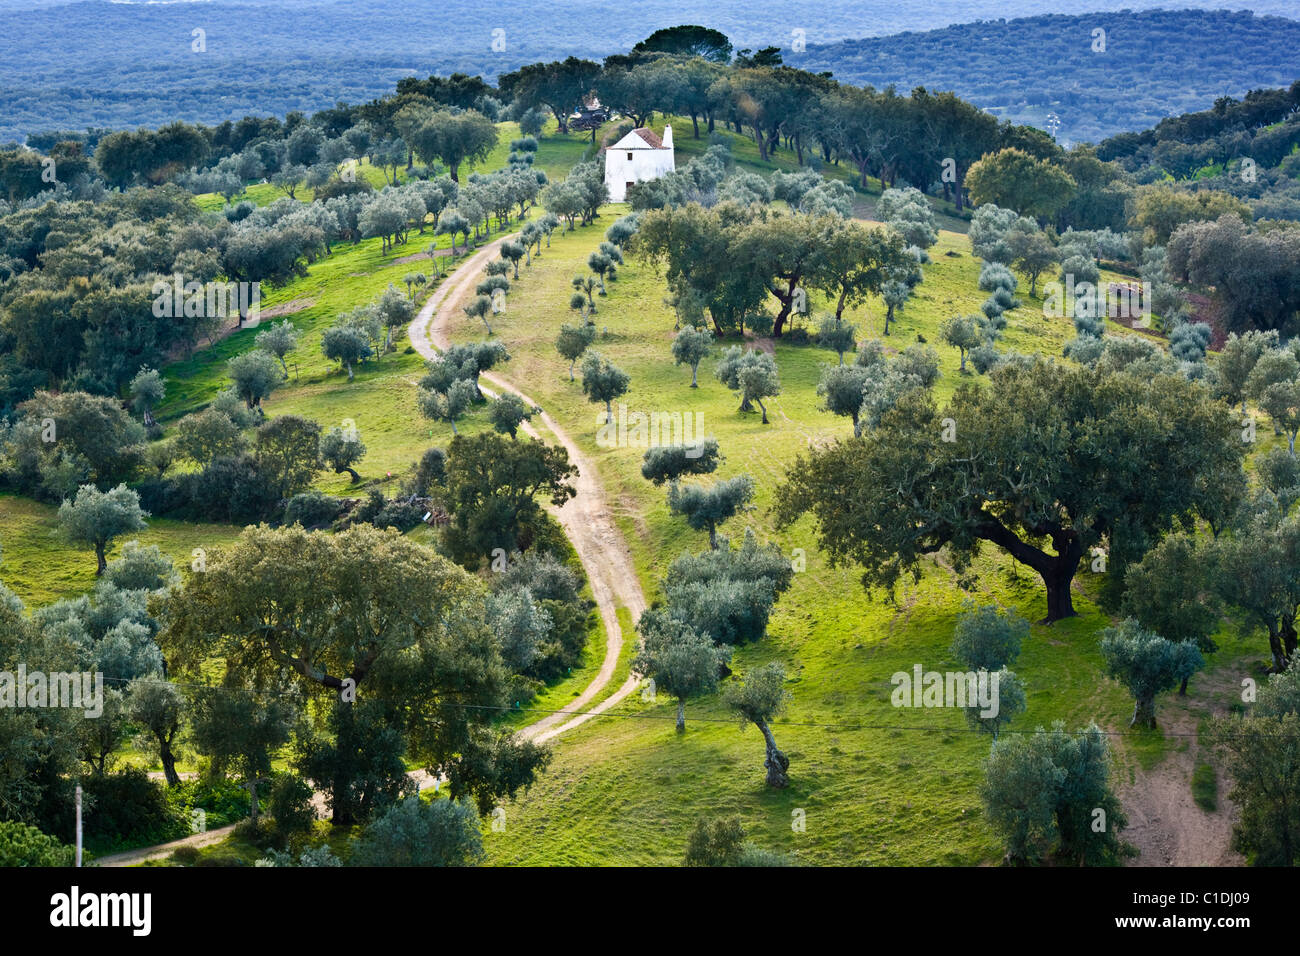 Le liège et les oliviers parsèment le paysage près de l'Alentejo au Portugal Evoramonte Banque D'Images